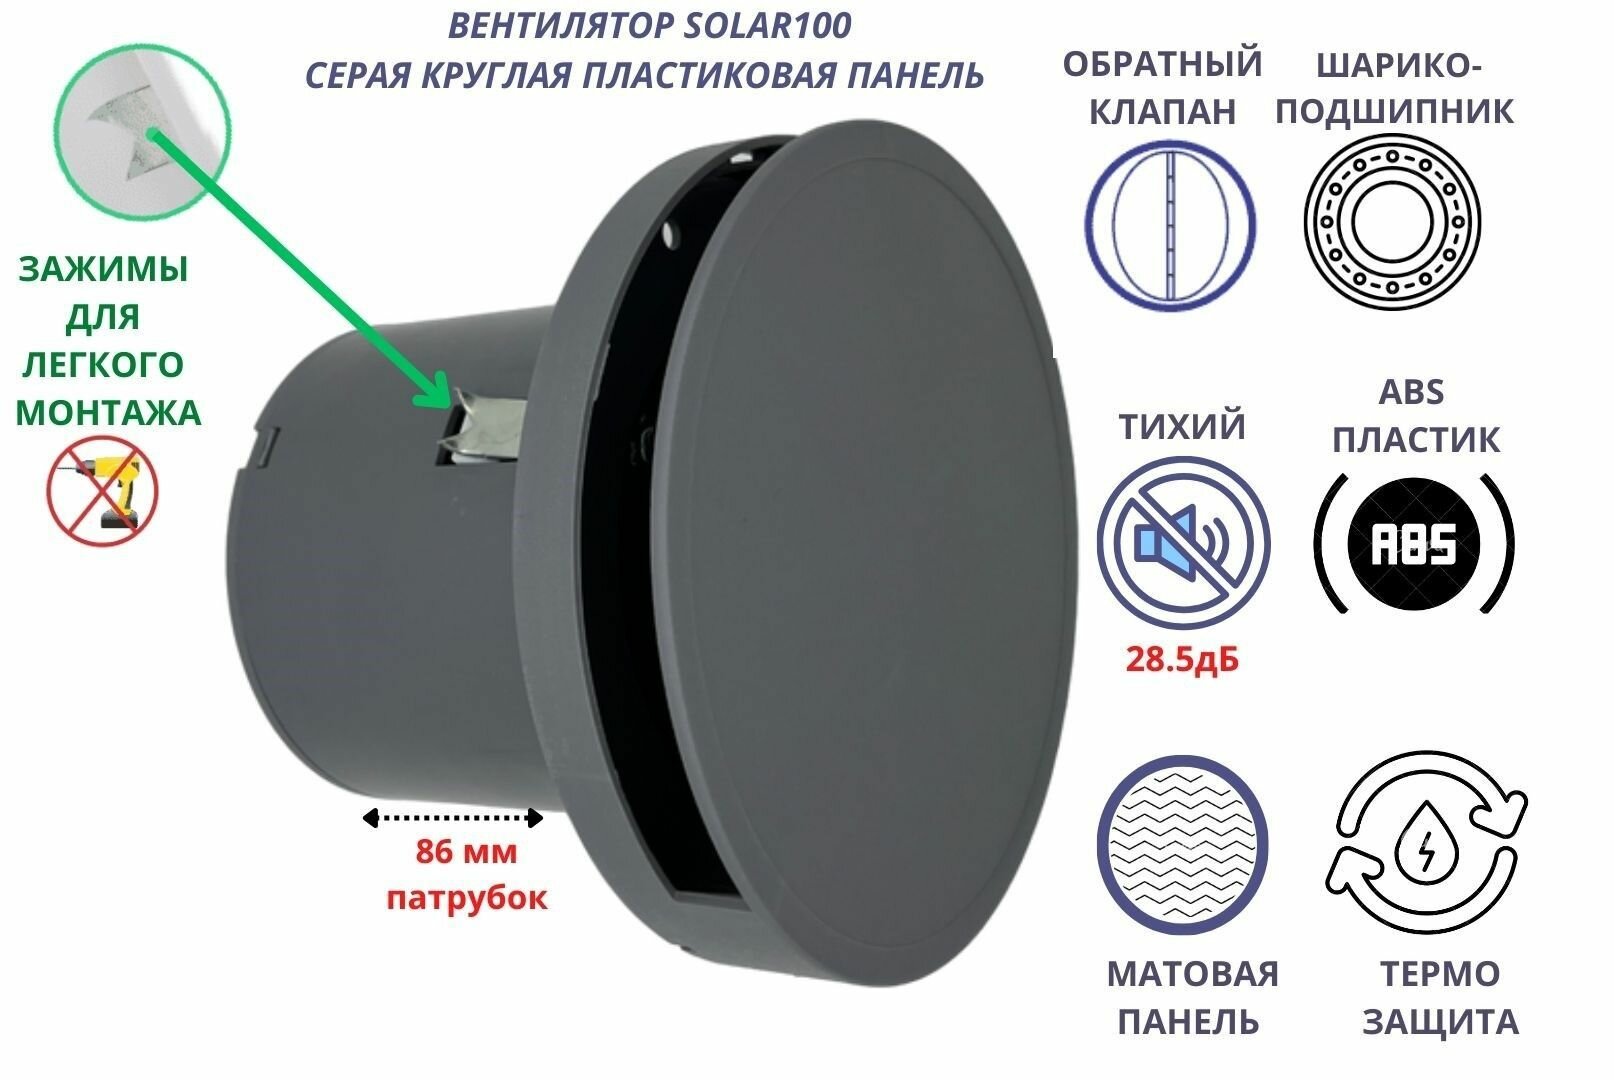 Круглый вентилятор D100мм, малошумный (28,5дБ), с обратным клапаном и креплением без сверления VENTFAN Solar100, серый матовый, Сербия